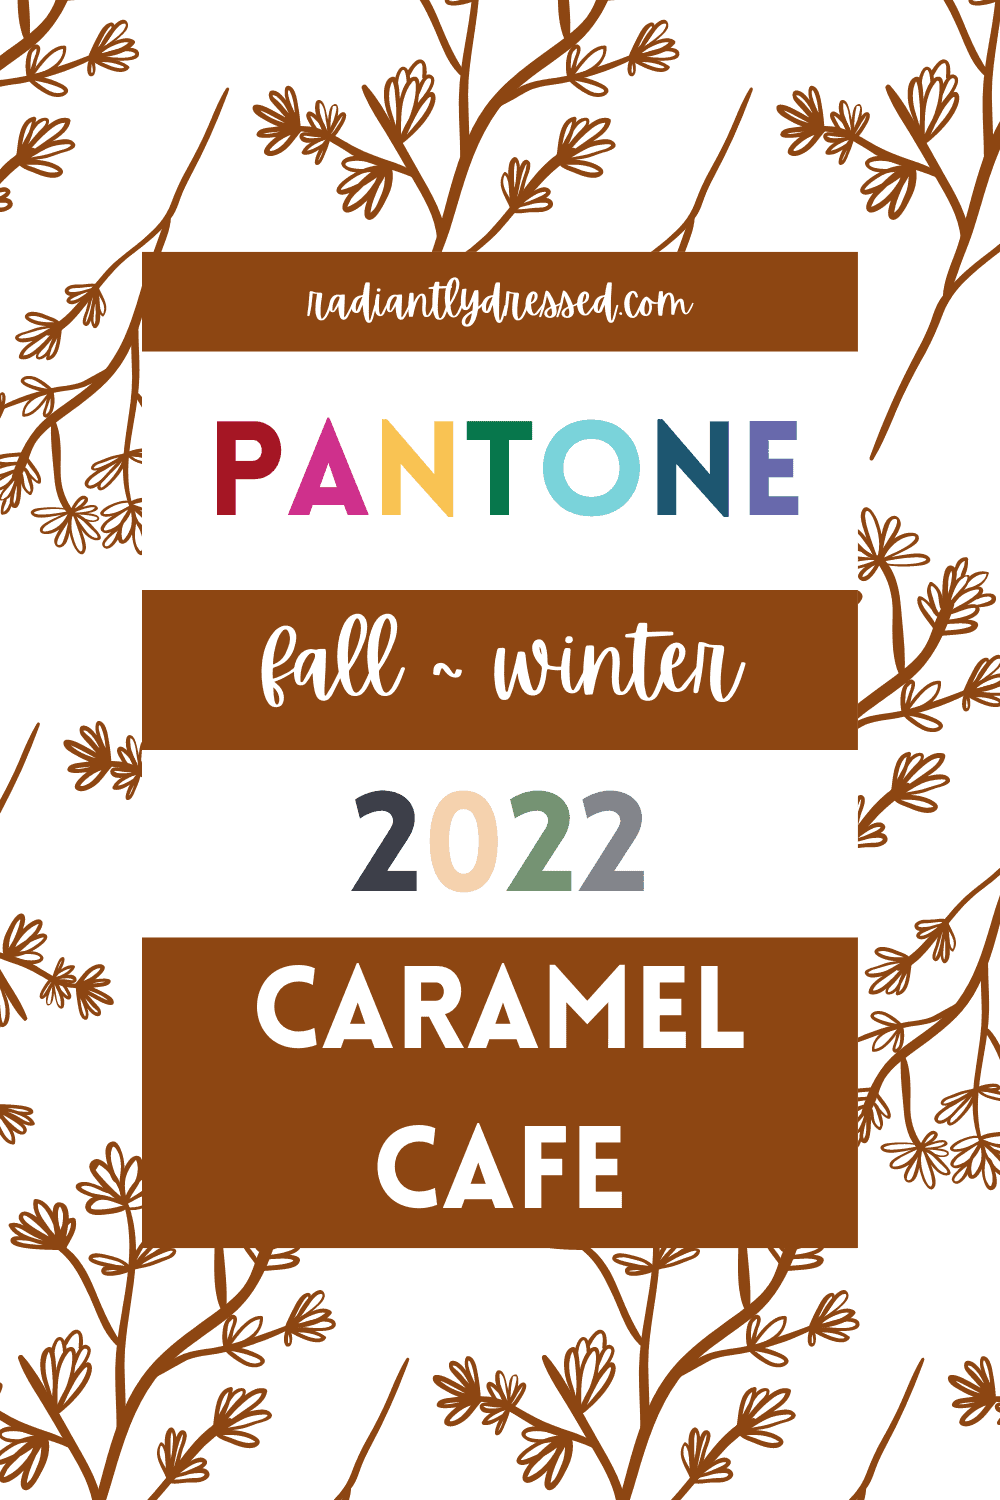 Pantone Caramel Cafe Pin